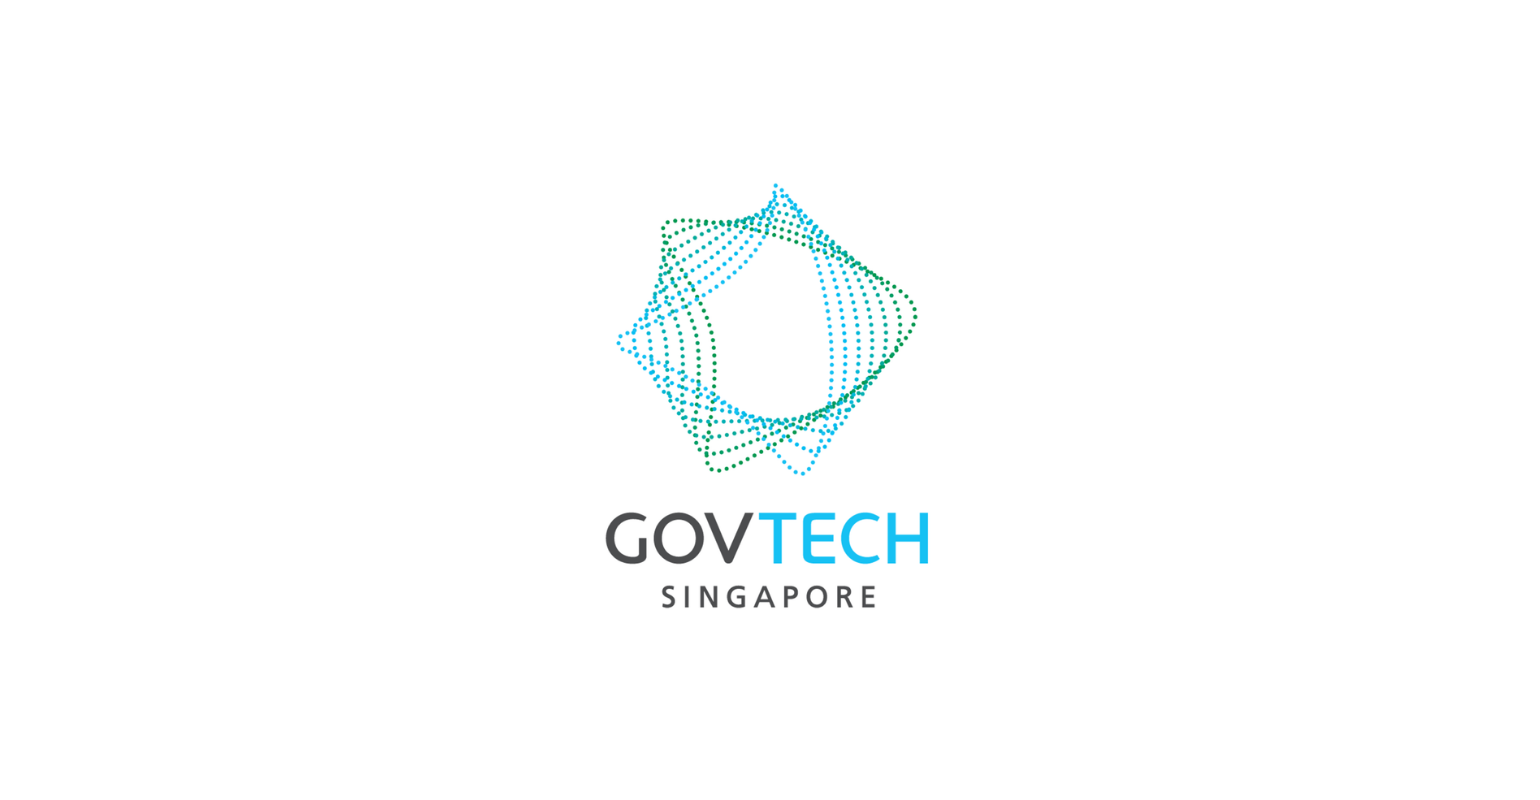 Access Alert | Singapore’s GovWallet Strengthens Public Sector Disbursements